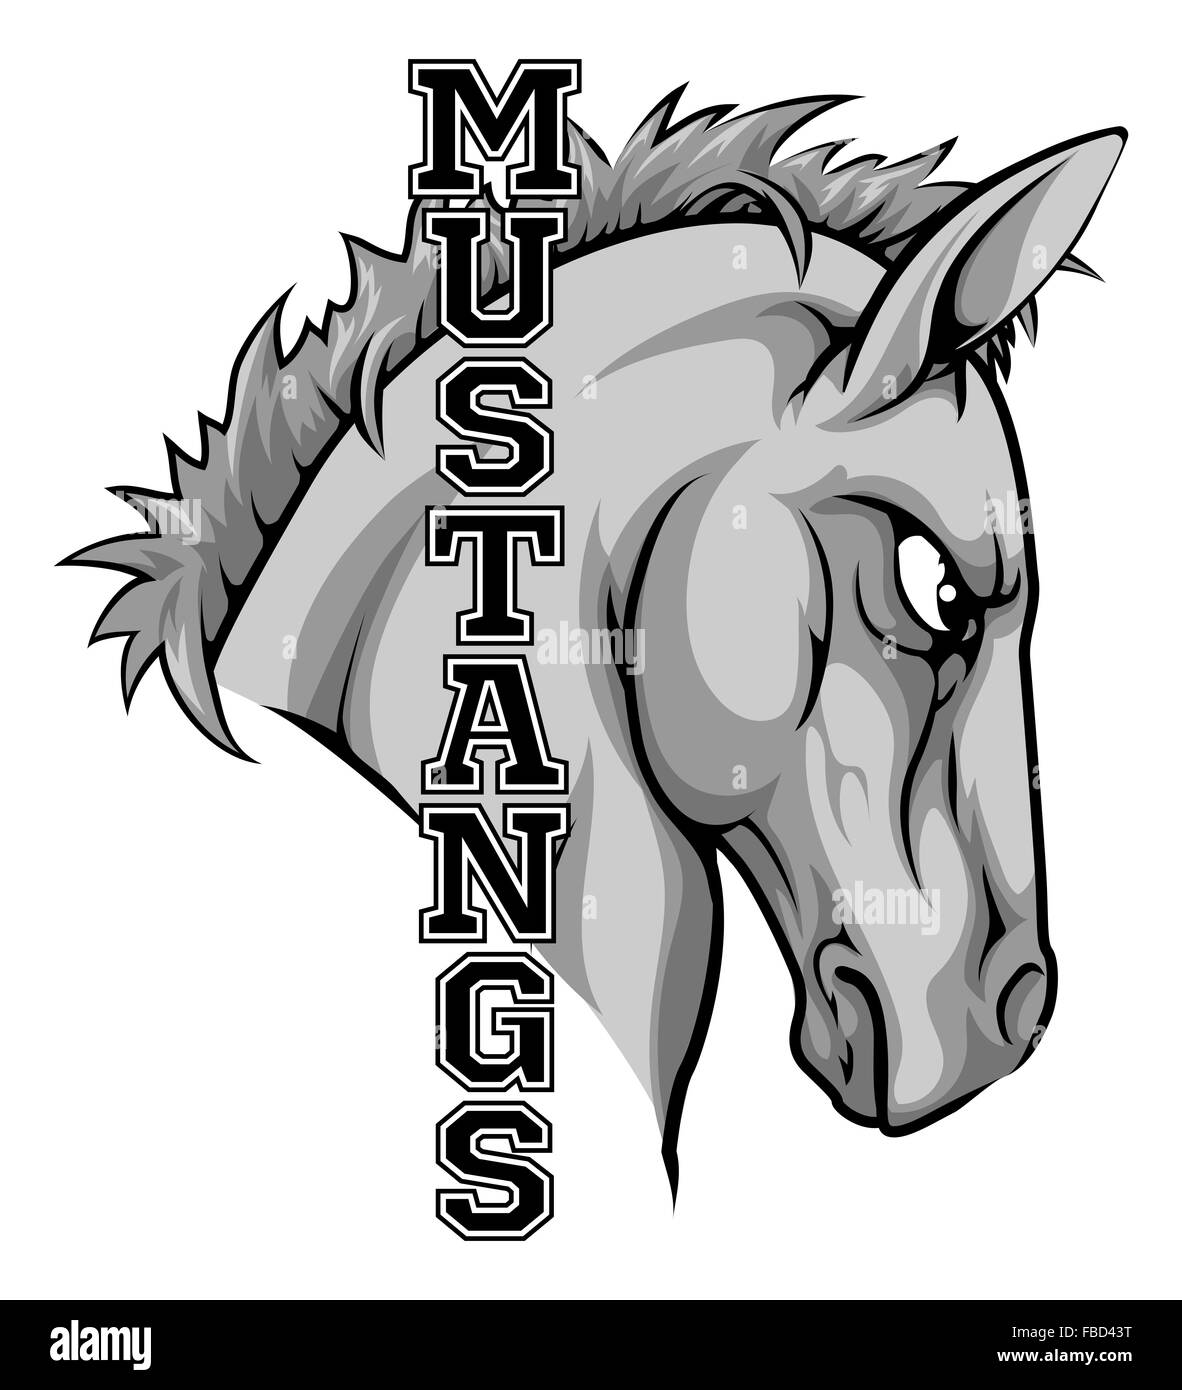 Eine Illustration der Cartoon Pferde Sport Team-Maskottchen mit dem Text Mustangs Stockfoto